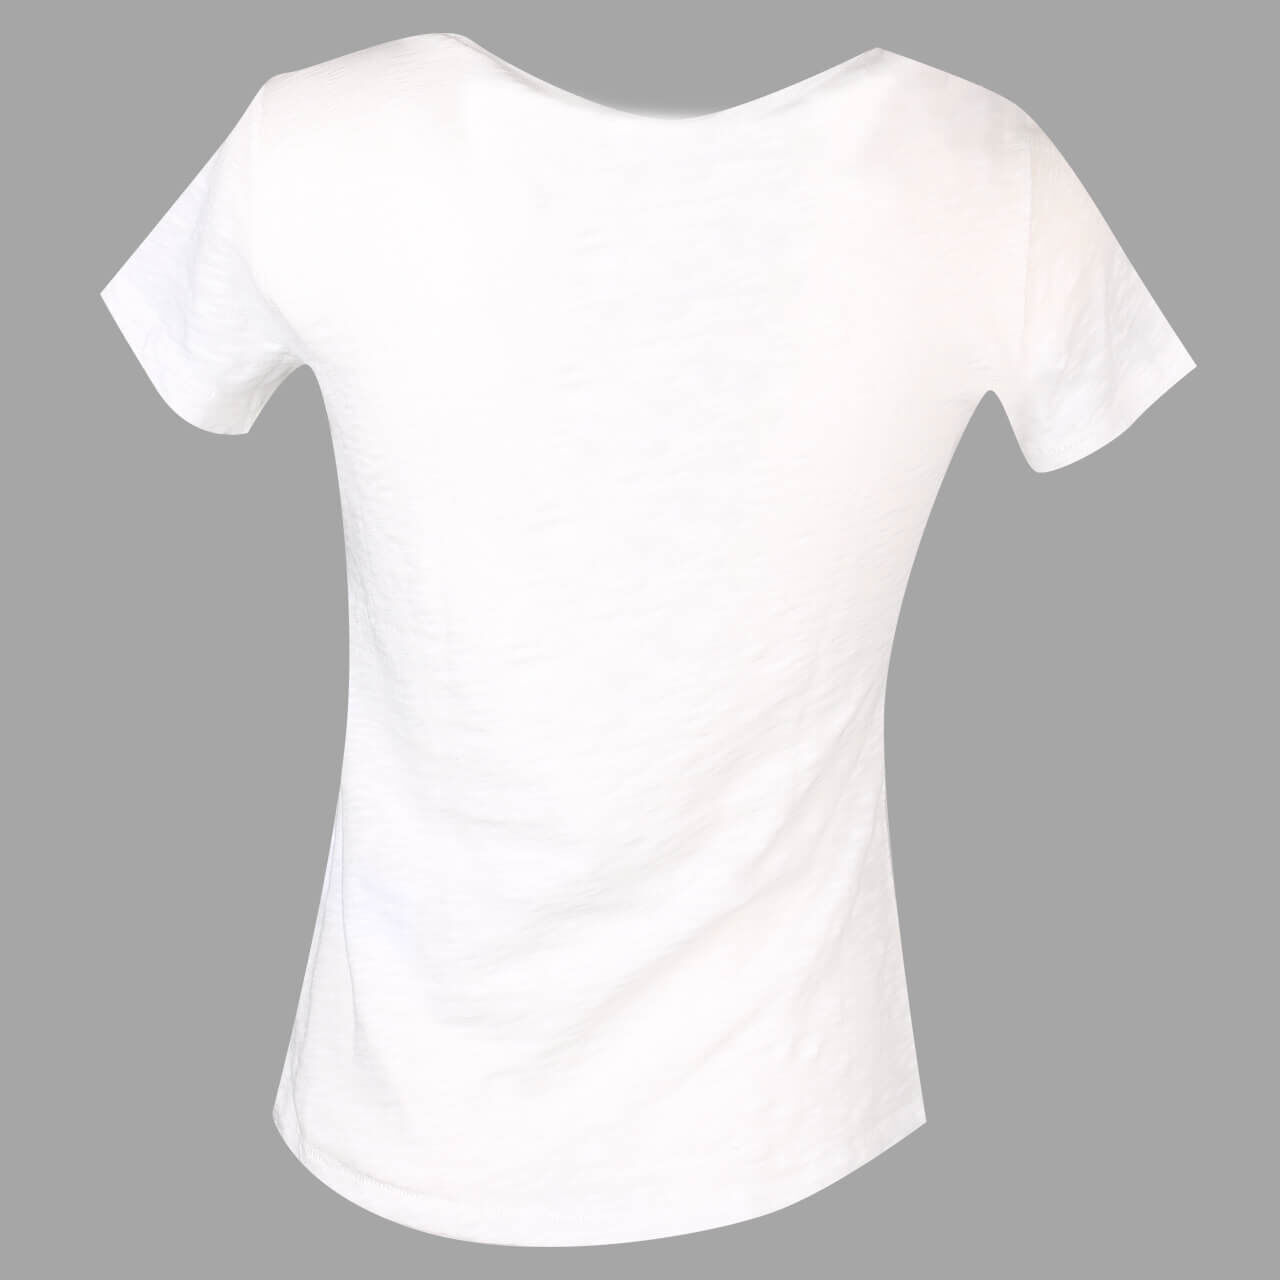 Monari T-Shirt für Damen in Weiß meliert, FarbNr.: 102